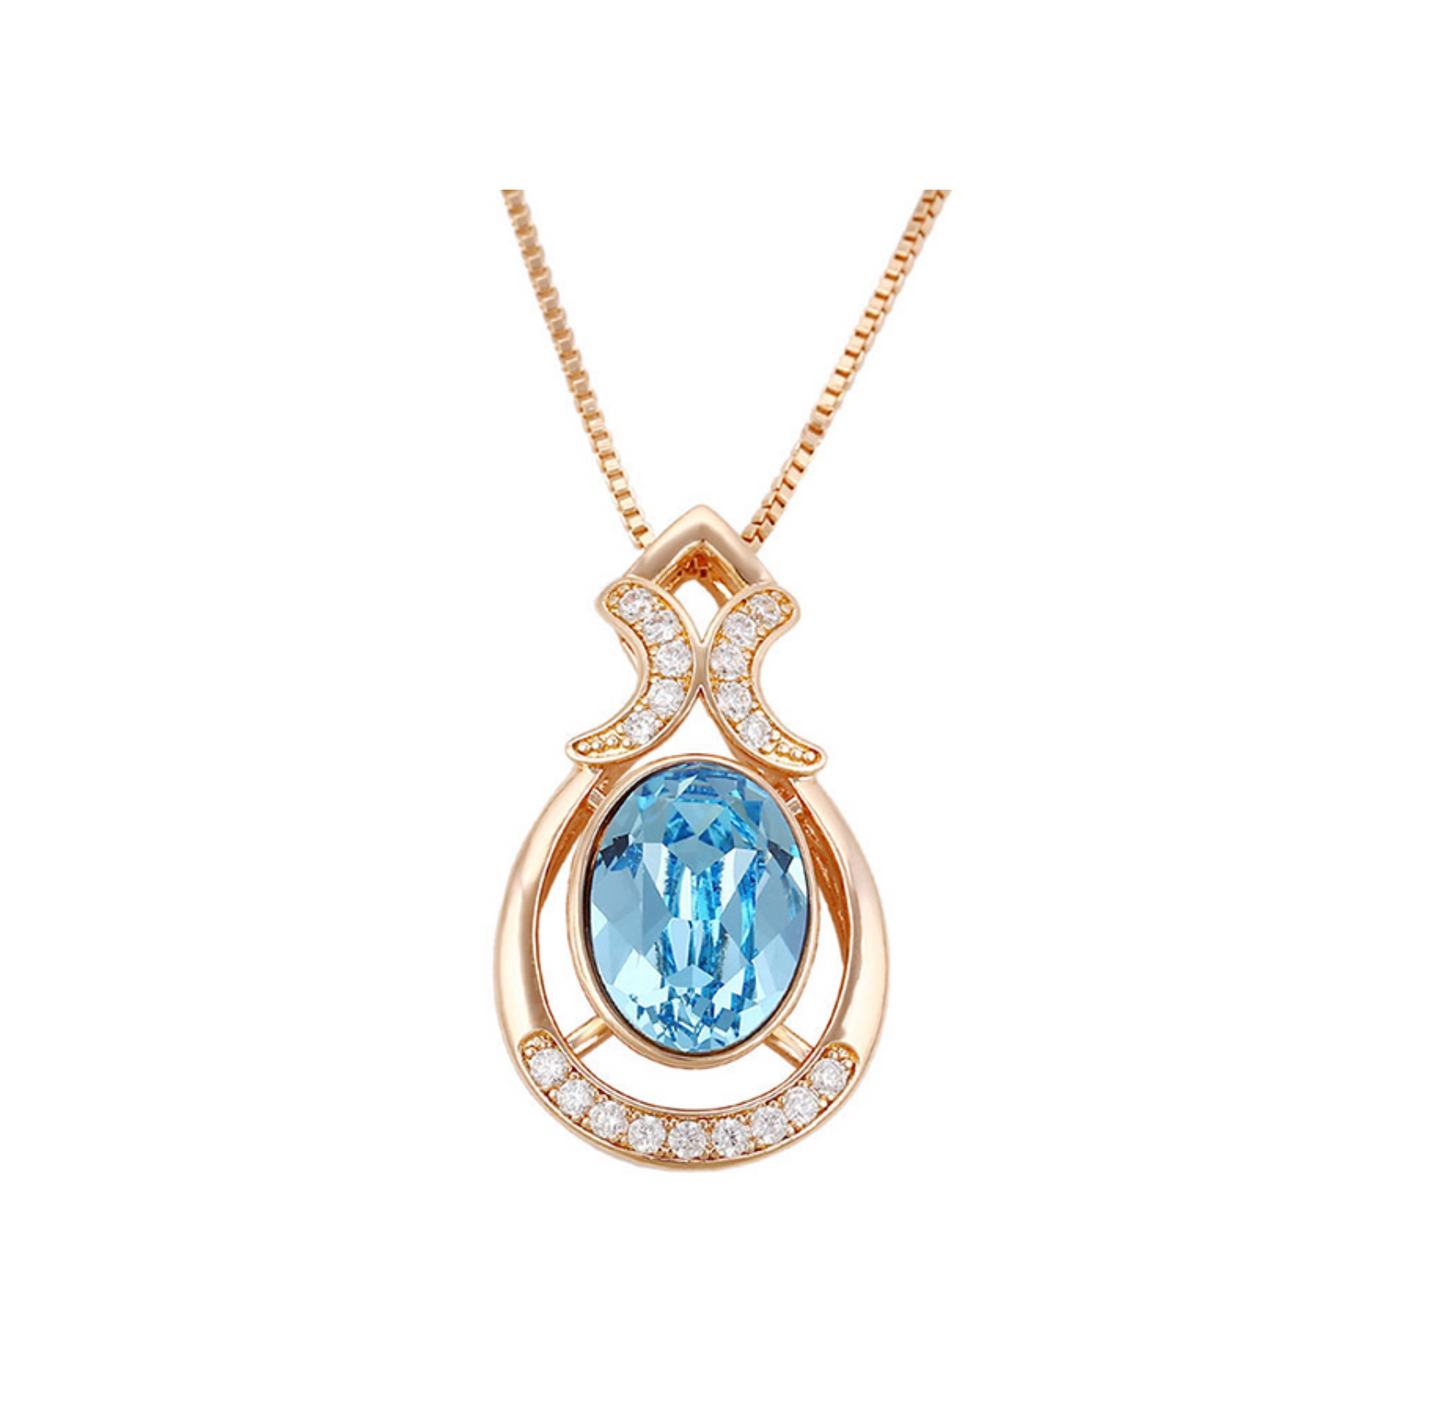 Goldtone Oval Crystal Ornate Pendant Necklace